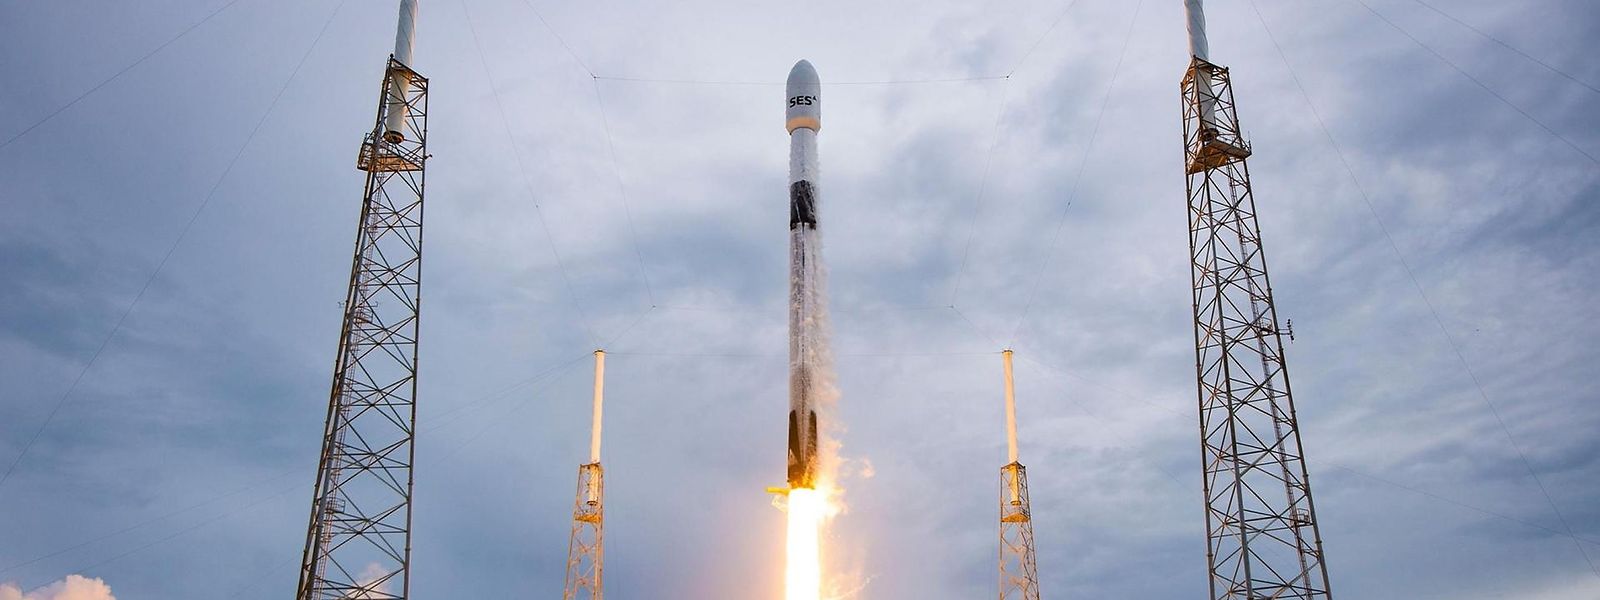 2013 ließ SES zum ersten Mal Satelliten mit einer Rakete von SpaceX ins All bringen.